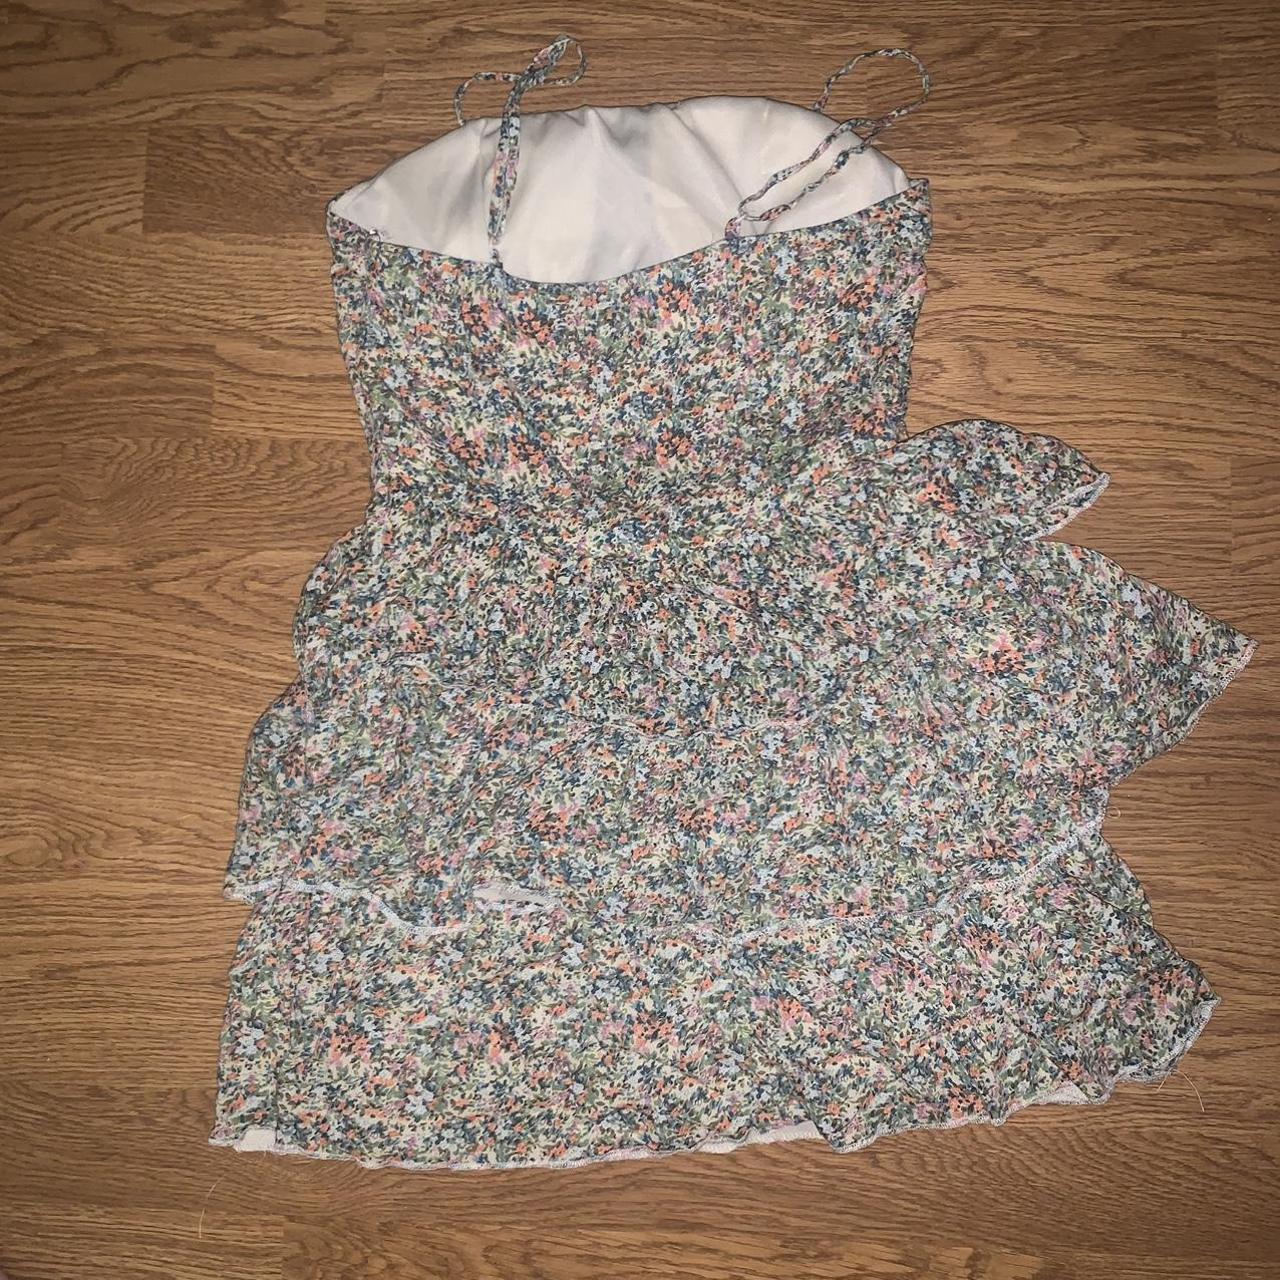 Flower print dress *it’s cut kind of small. I am... - Depop